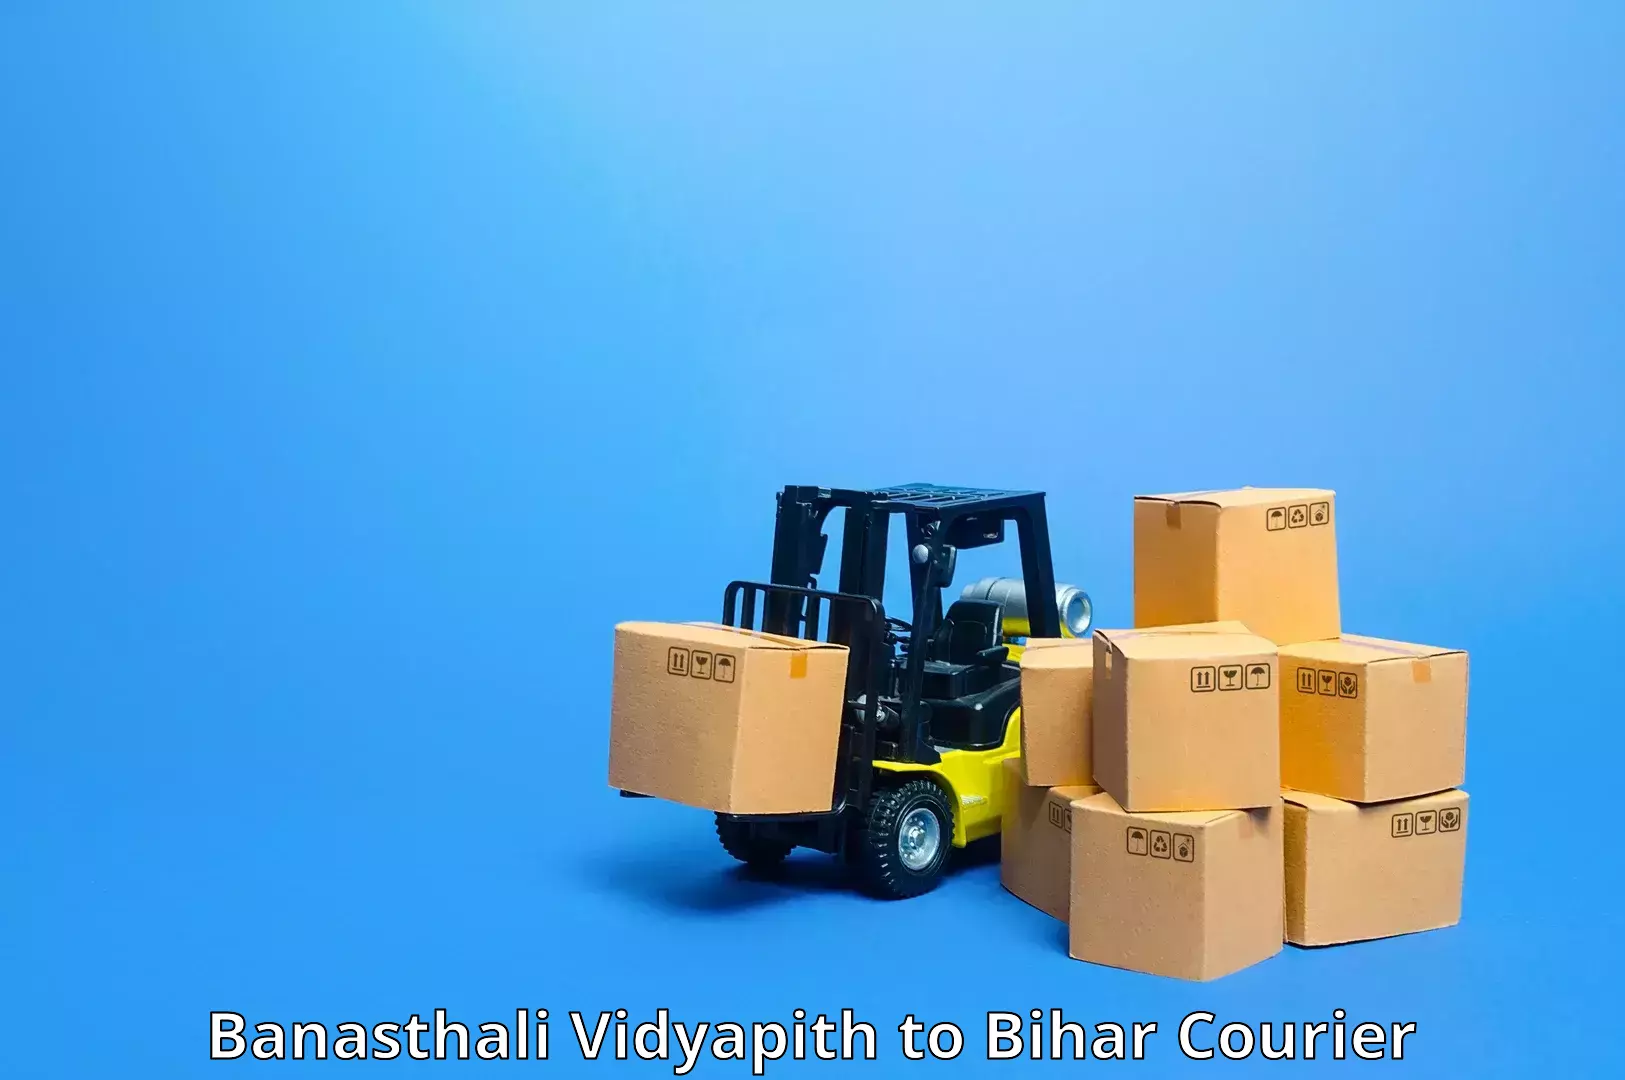 Fast shipping solutions in Banasthali Vidyapith to Vaishali